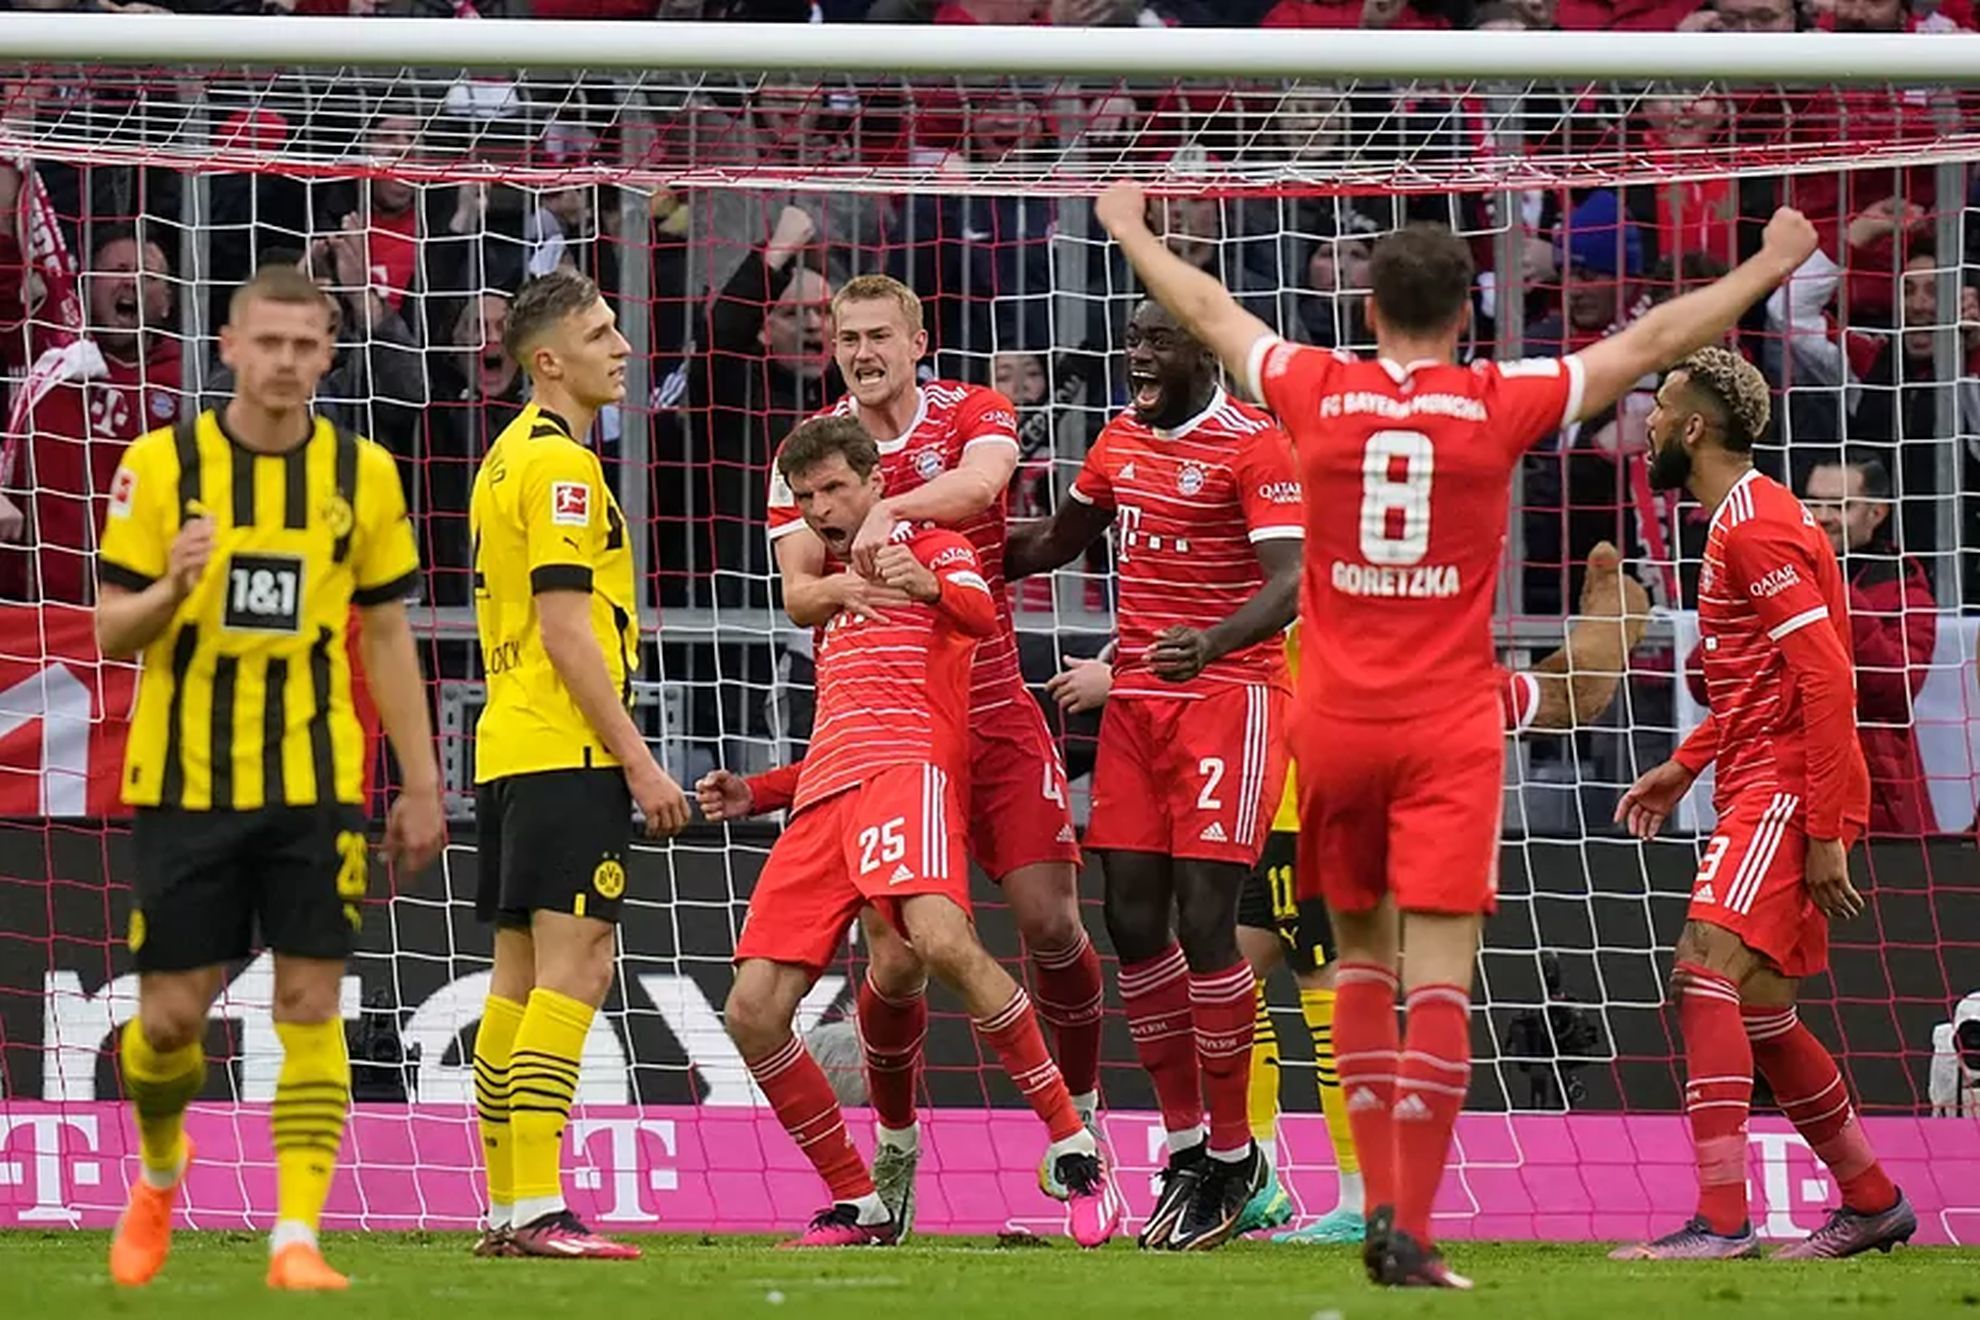 Bayern Munich celebrate a goal against Borussia Dortmund